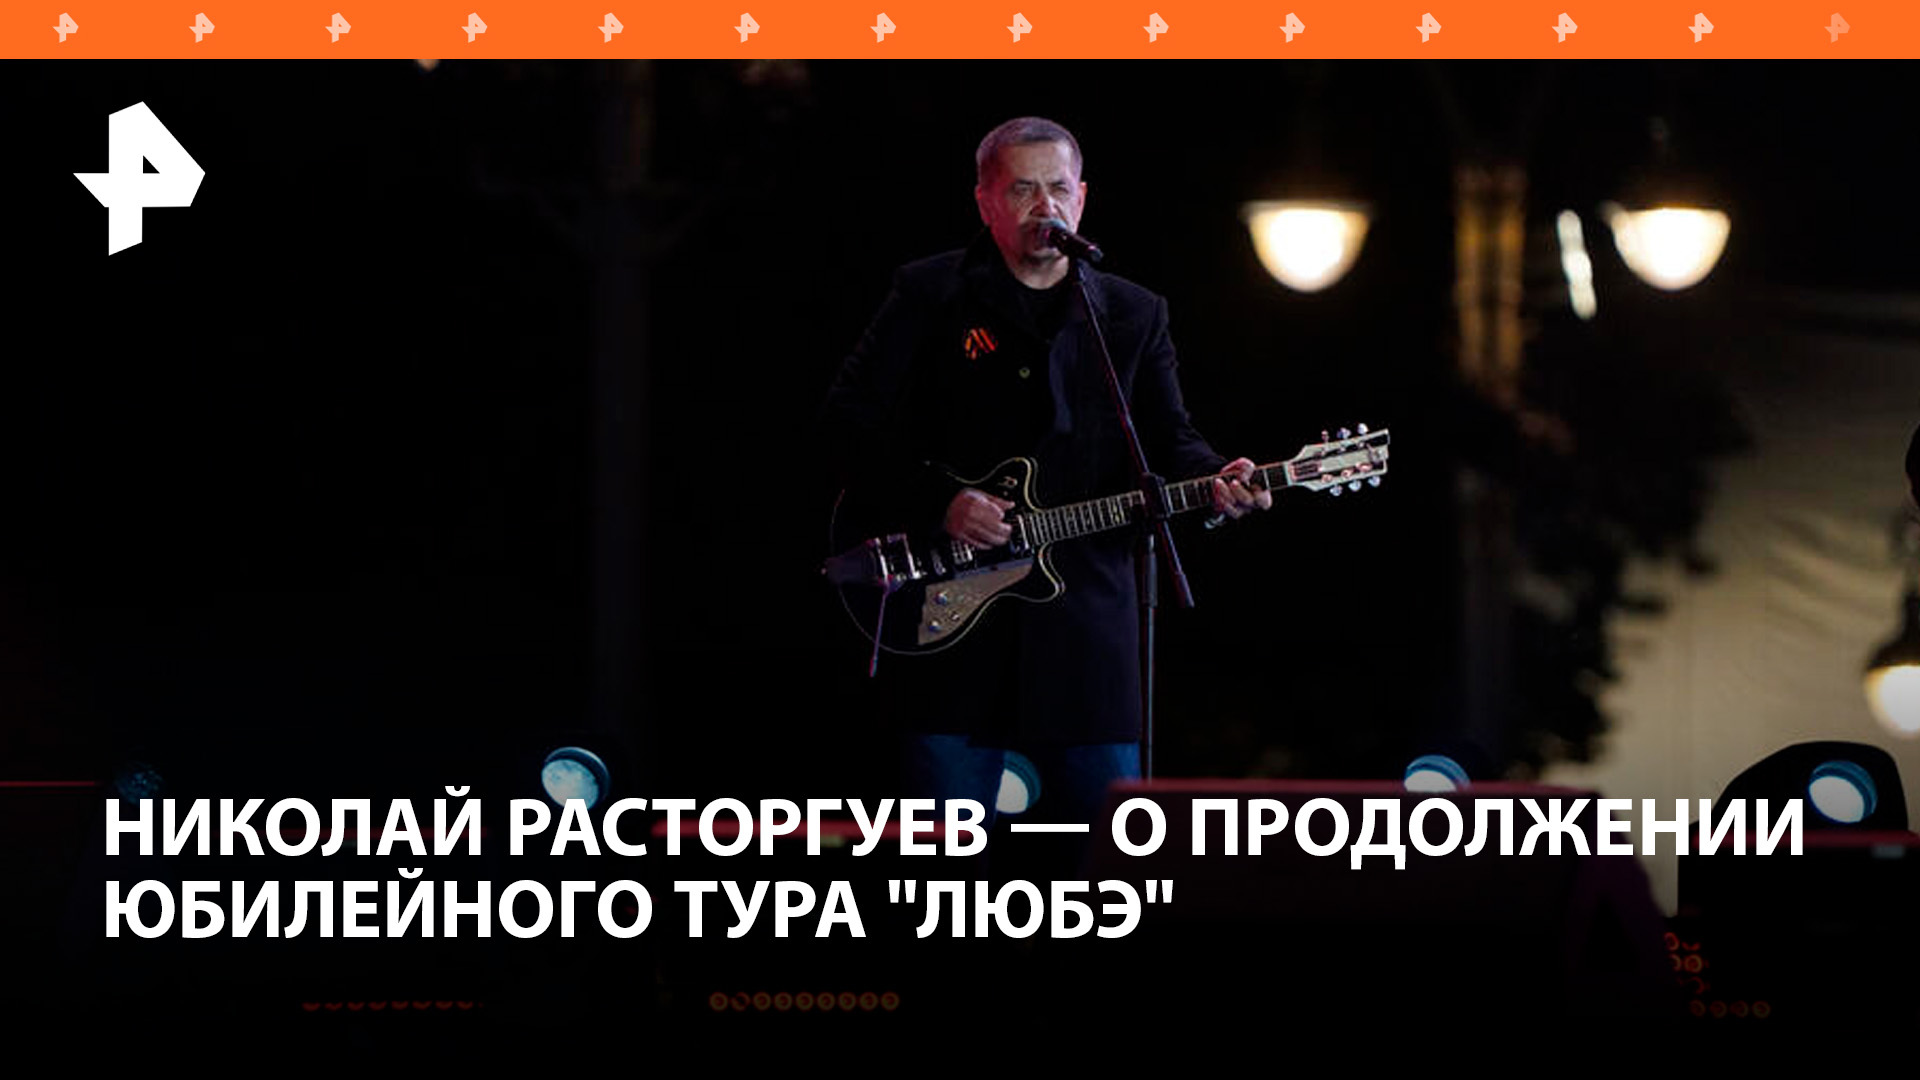 Расторгуев из Омска рассказал о продолжении юбилейного тура "Любэ" / РЕН Новости